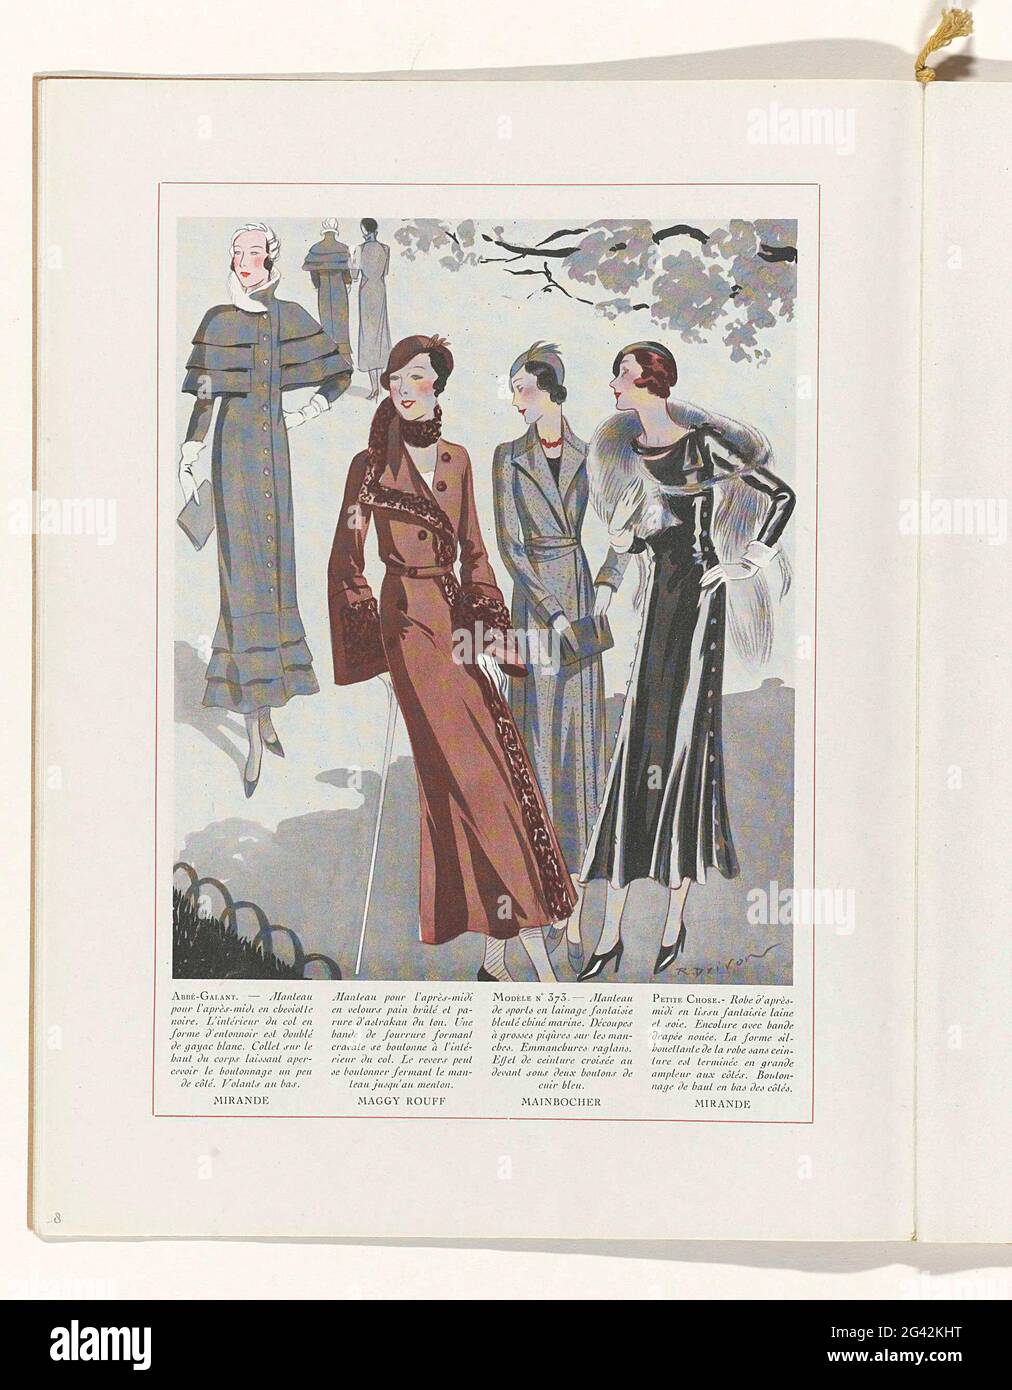 Art - Goût - Beauté, Feuillets de l 'Élégance Féminine, Novembre 1931, no.  135, 12th Année, p. 8. Four women in a park. From left to right: Cloak for  the afternoon of